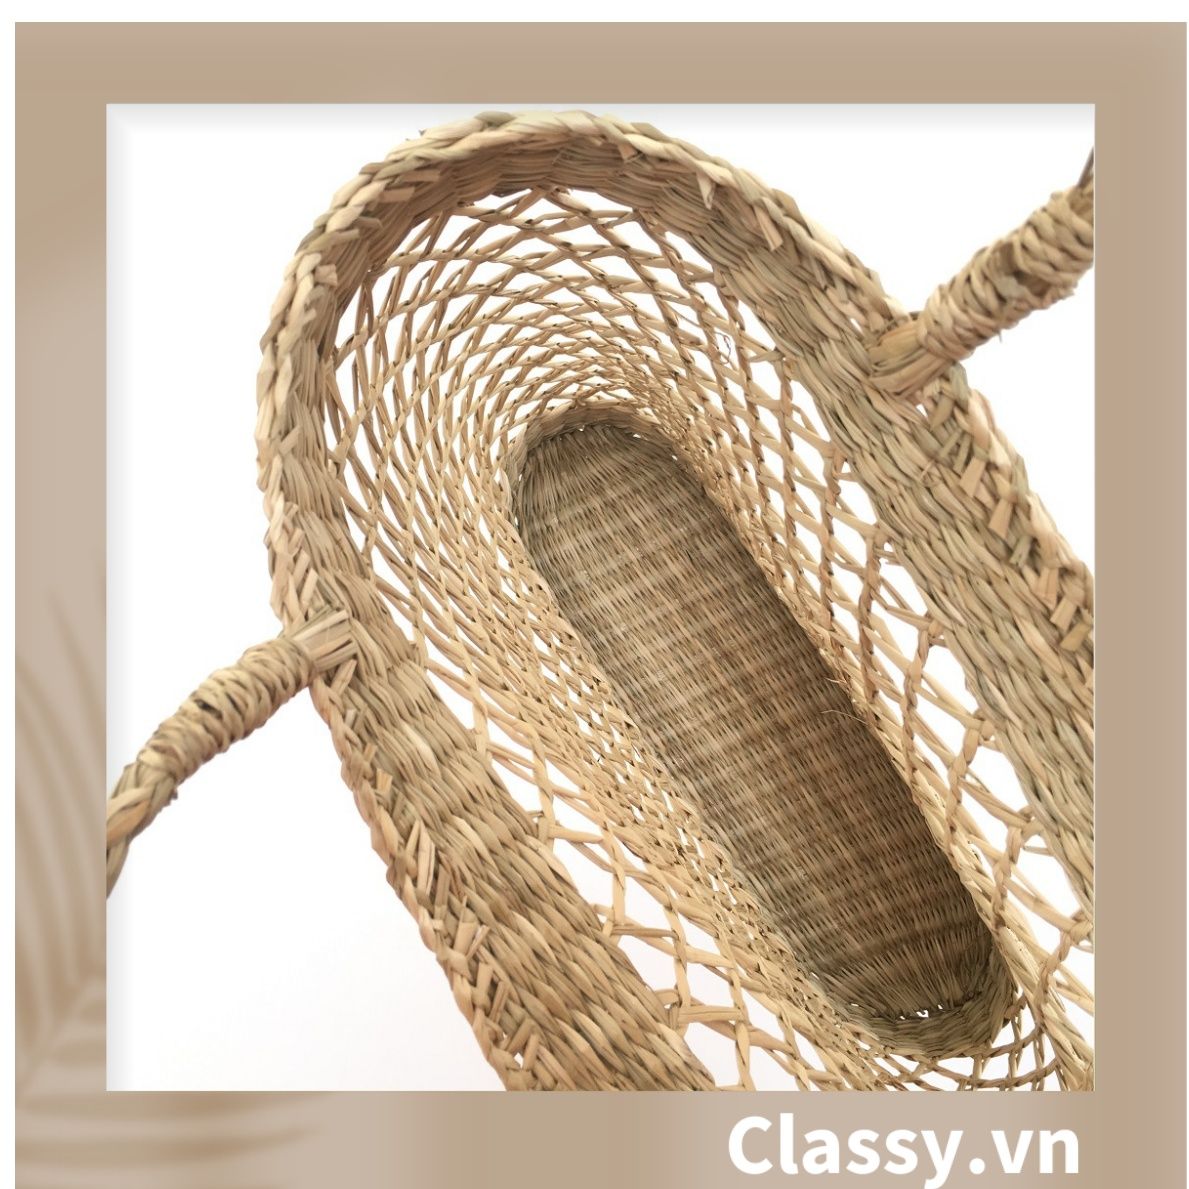  Túi cói làn cói mắt cáo trơn đi biển có nơ, kiểu dáng Vintage, đan thủ công bởi thợ Việt Nam T328 